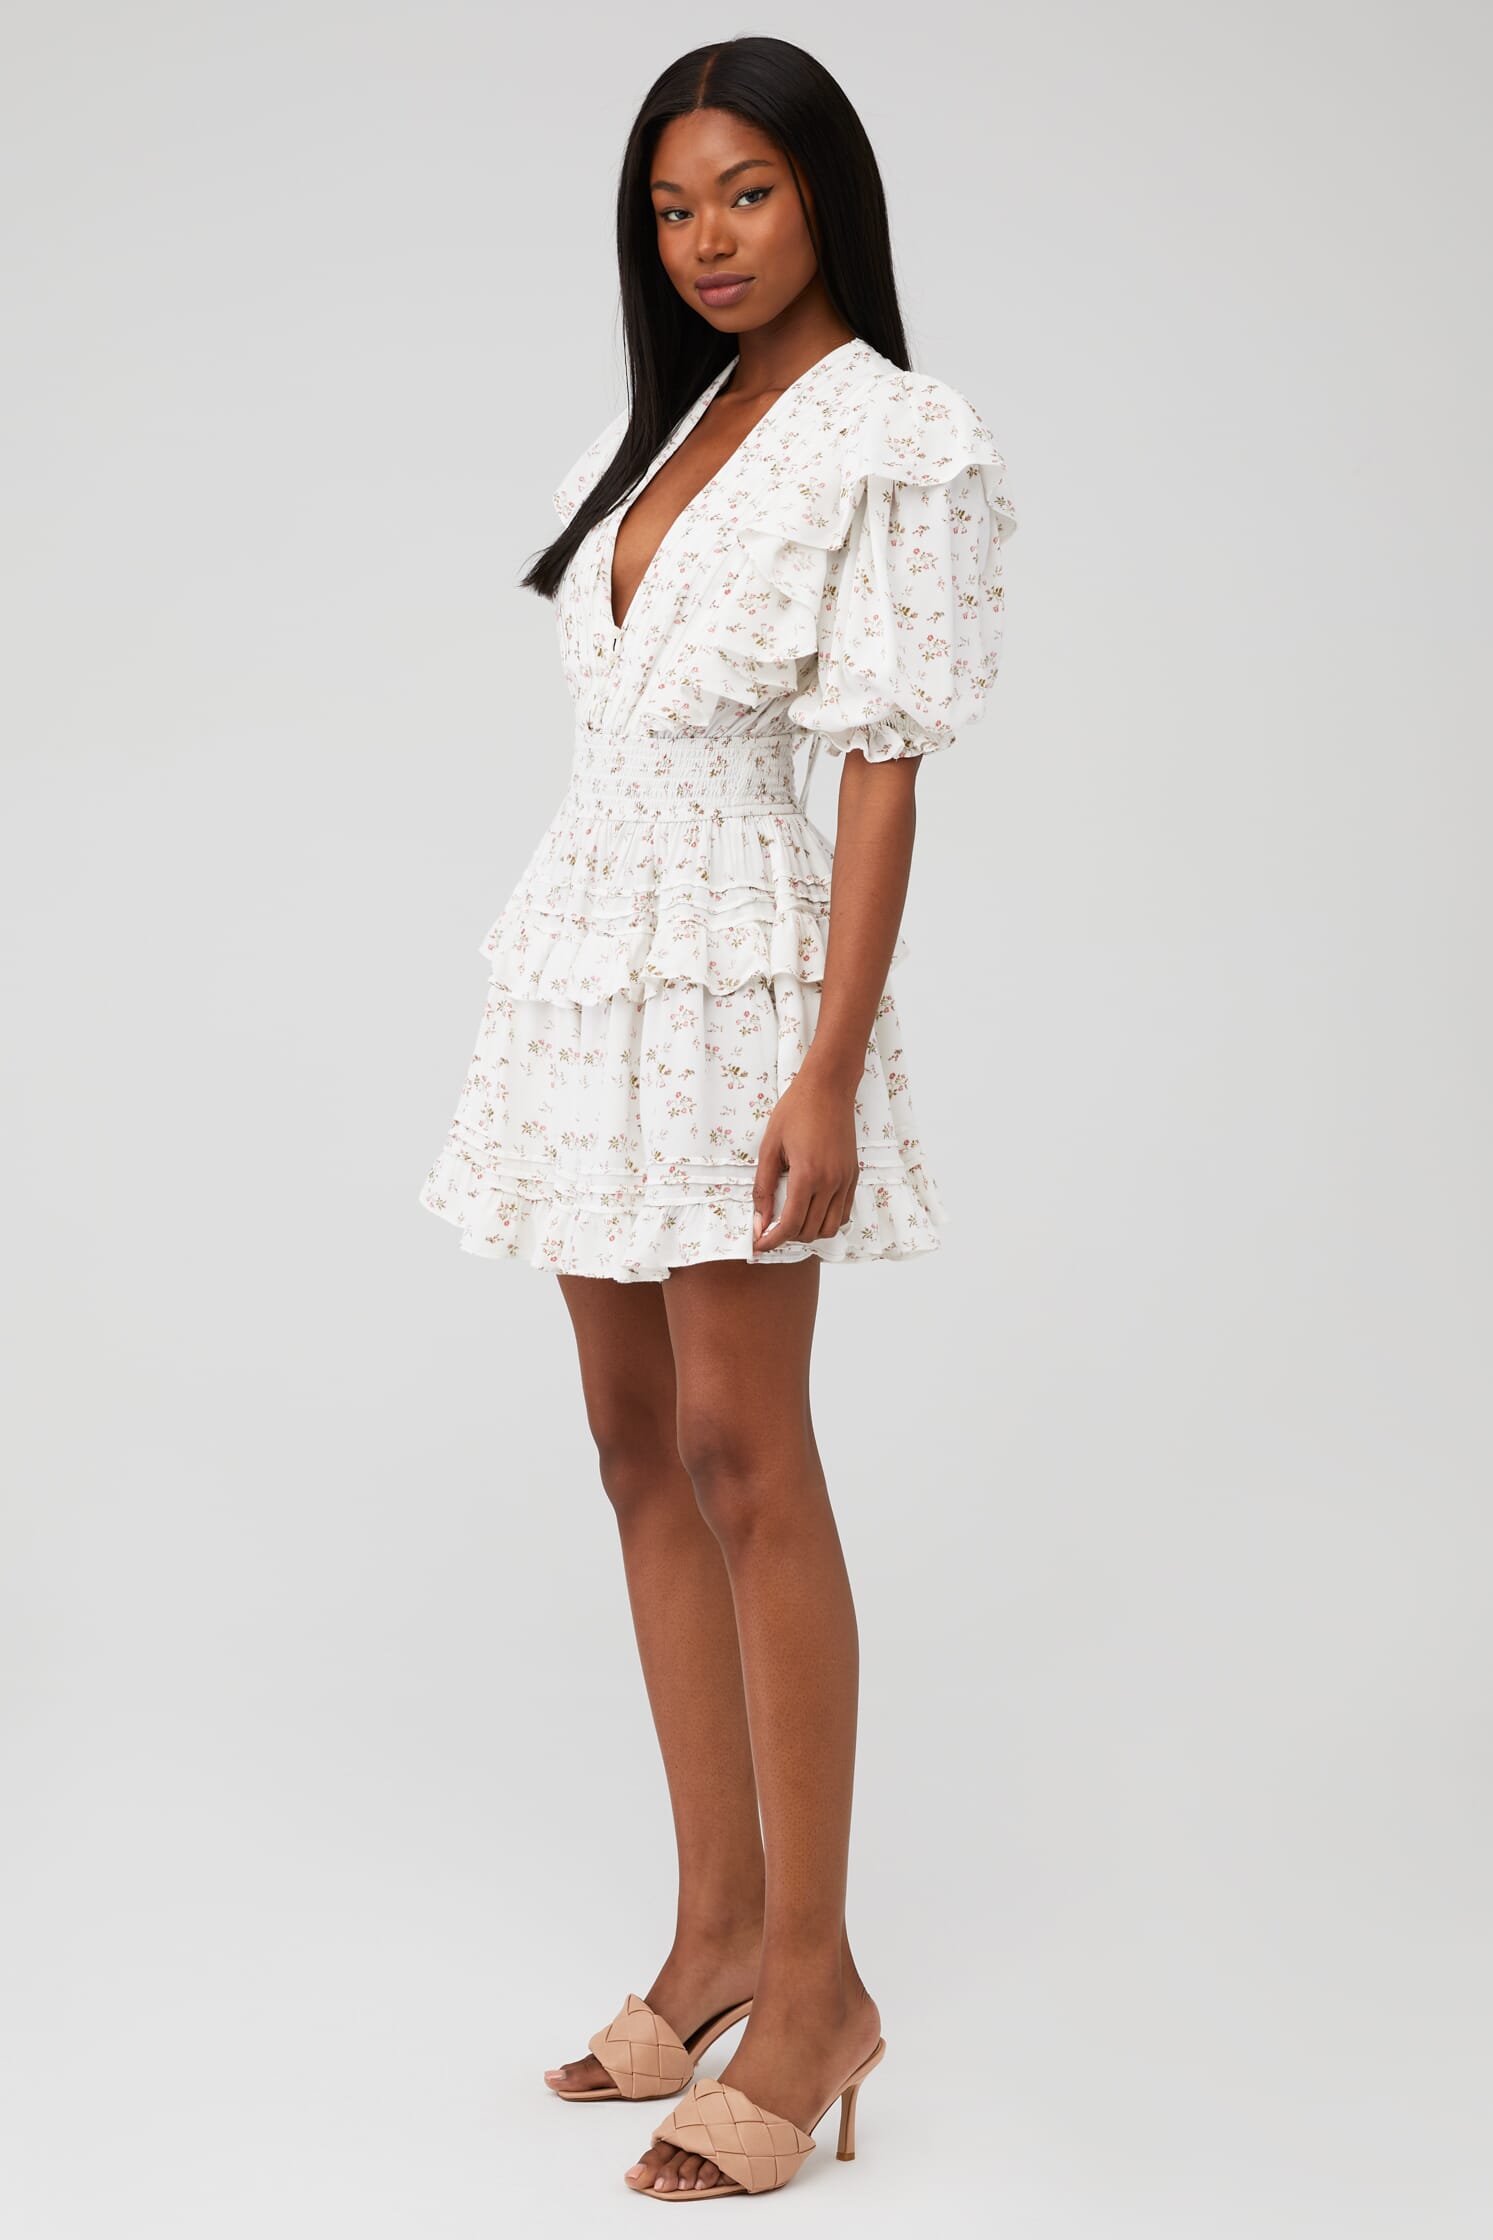 New! NWT JEN’S PIRATE BOOTY Almond Lace Ruffled Cotton Mini Dress 